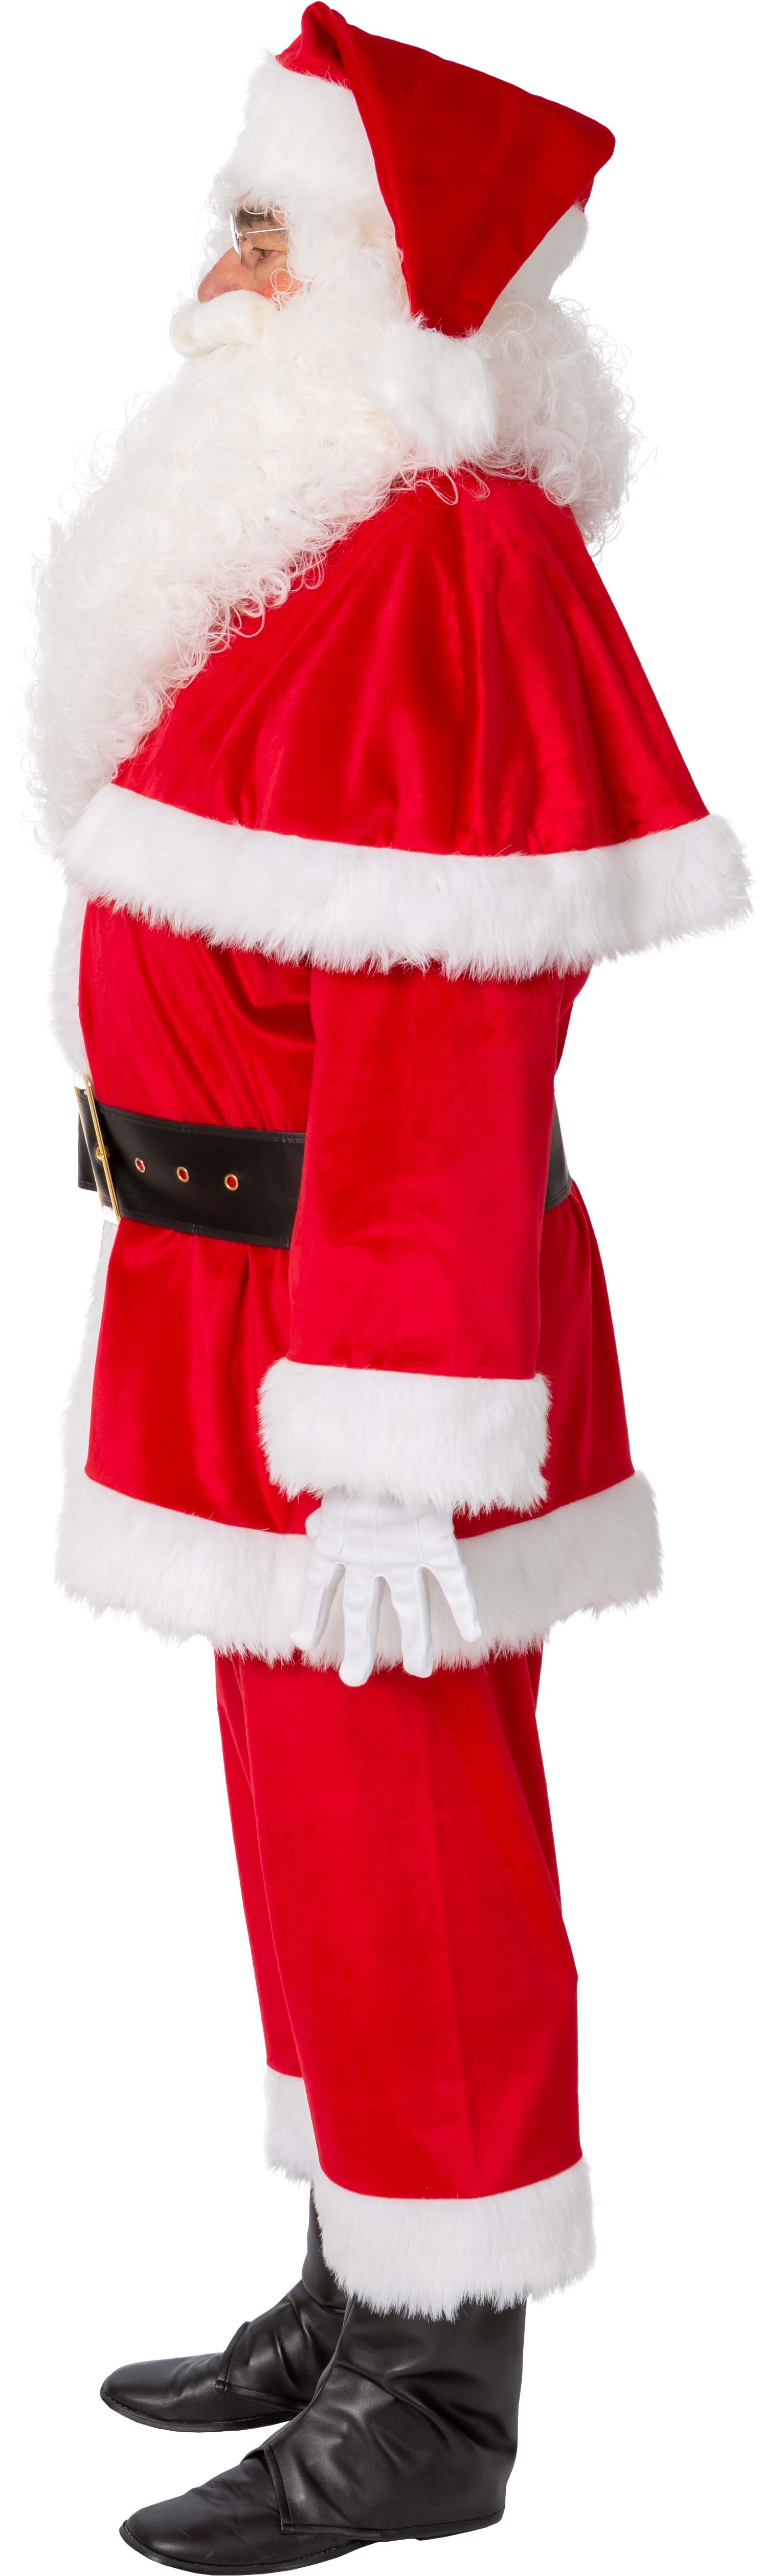 Santa Claus suit, dark red